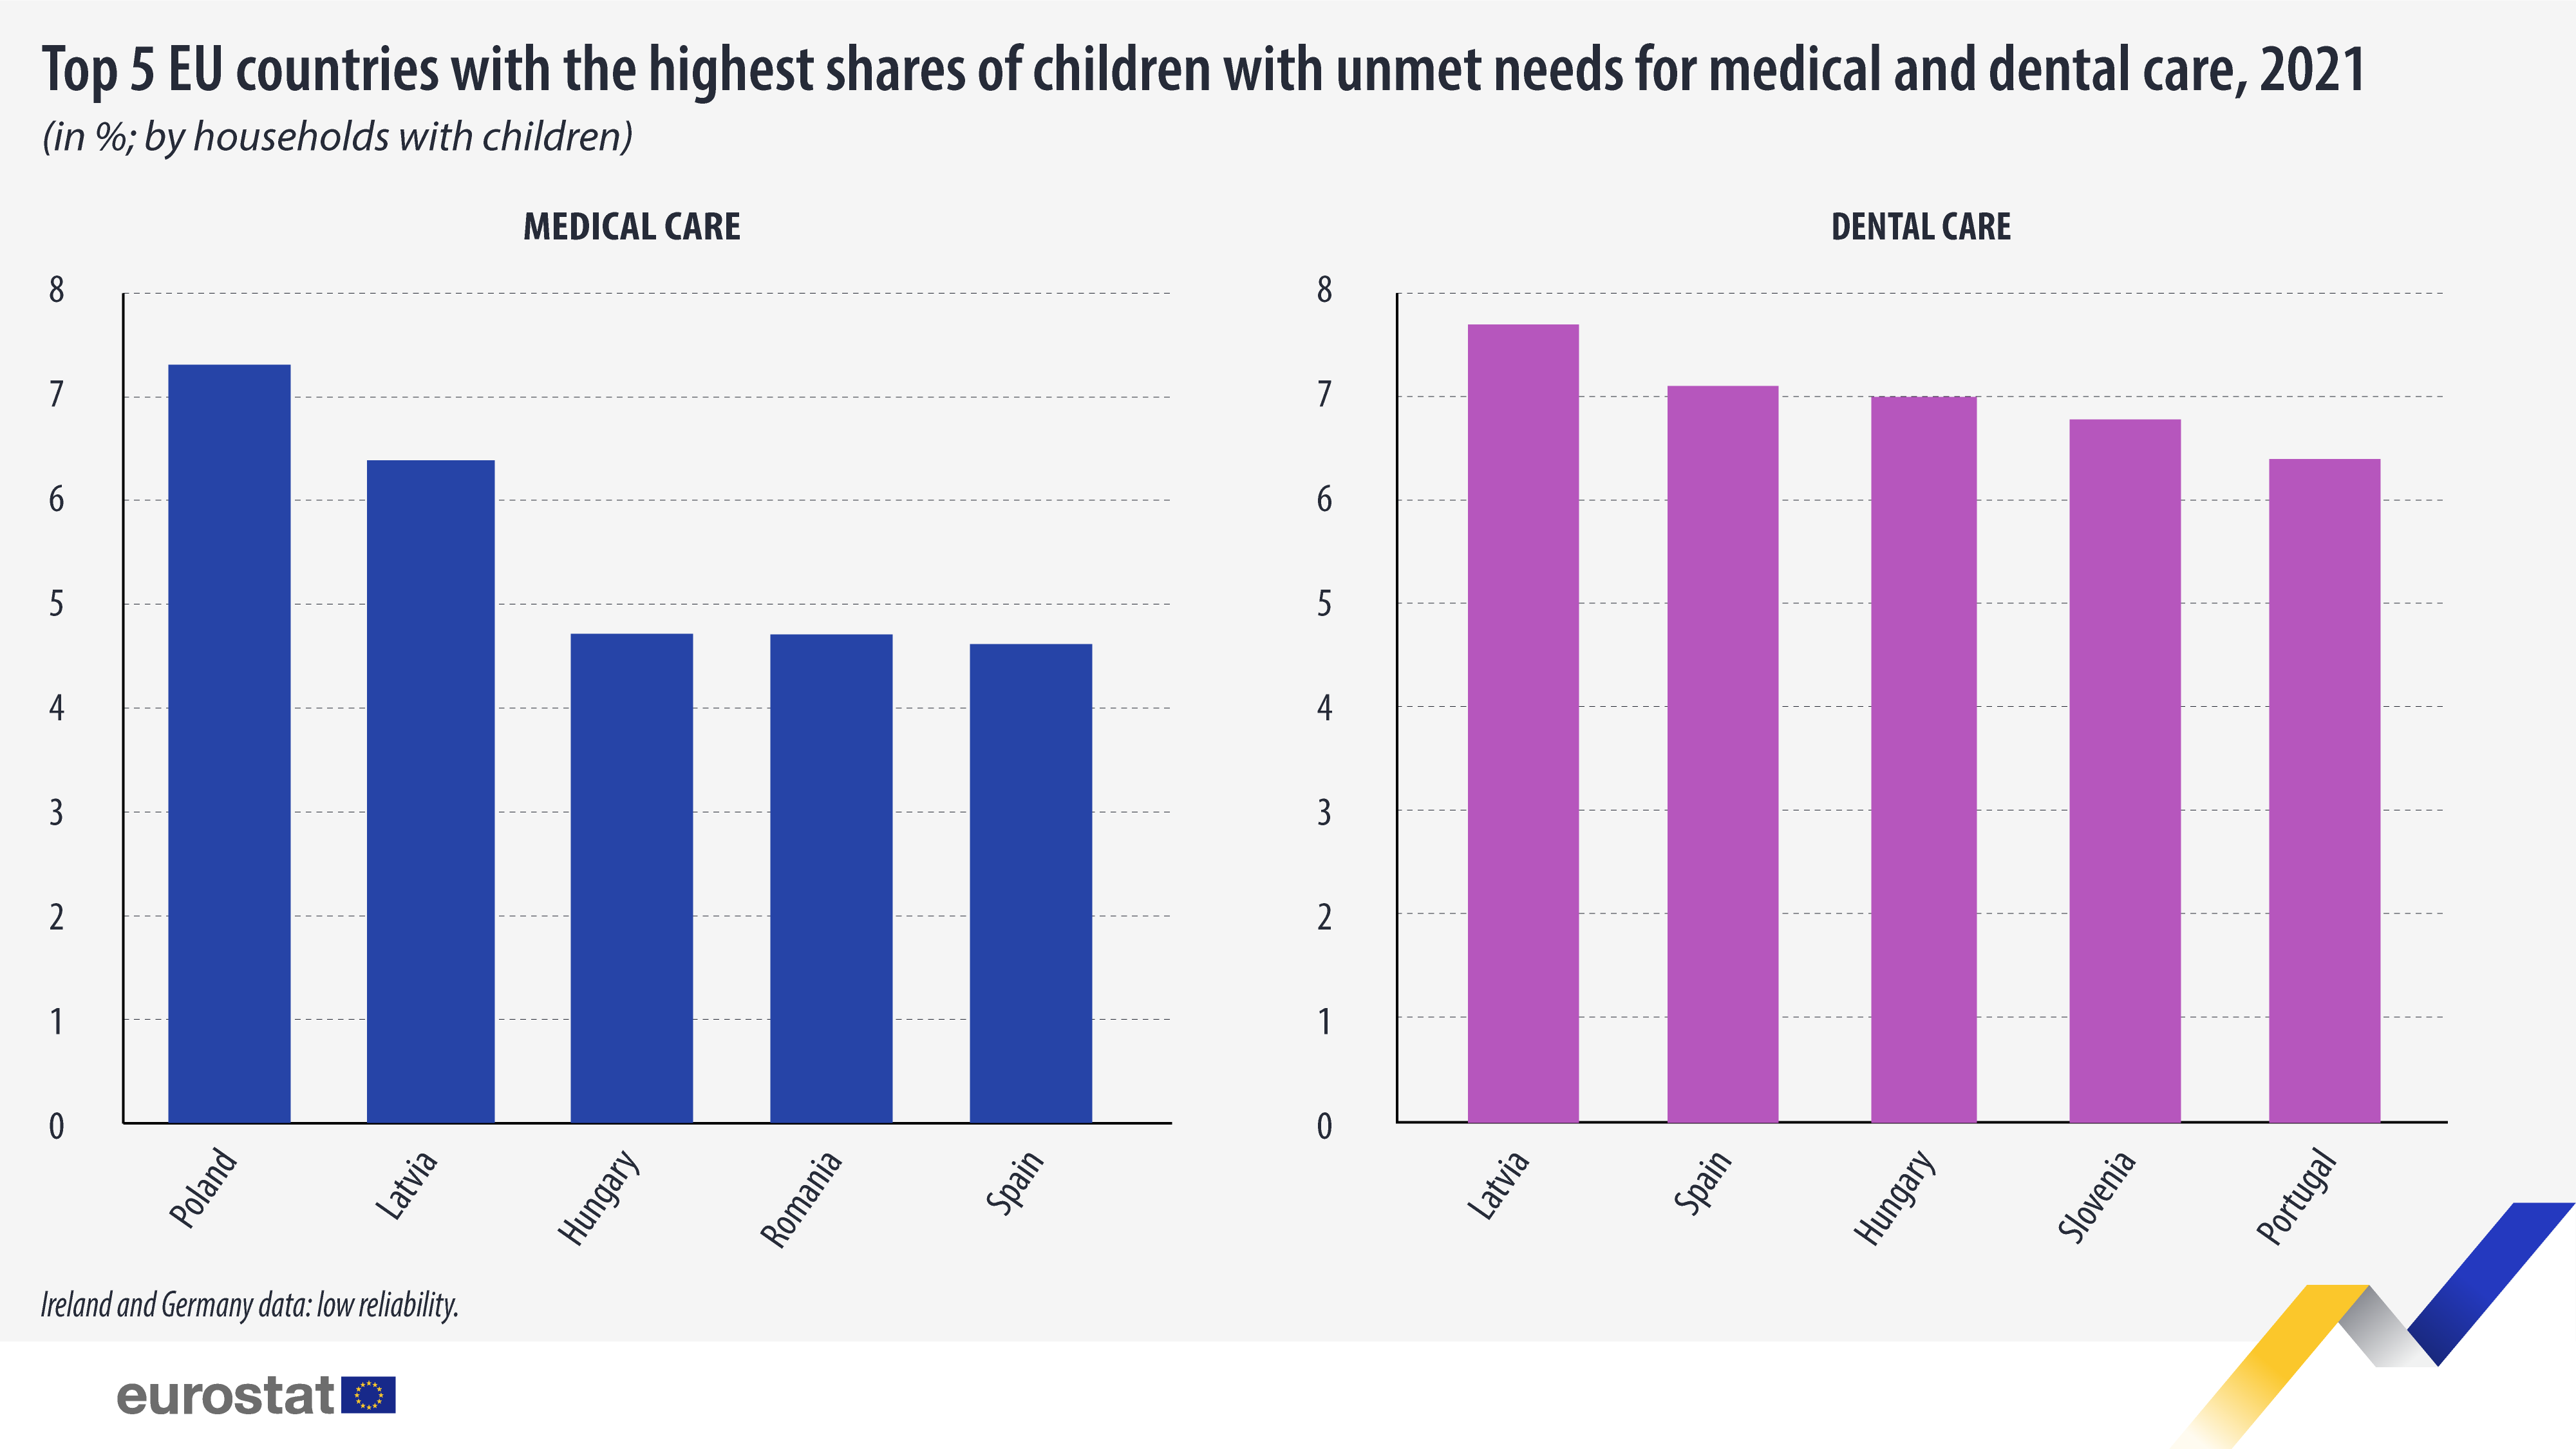 Διάγραμμα ράβδων: Οι κορυφαίες 5 χώρες της ΕΕ με τα υψηλότερα ποσοστά παιδιών με ανεκπλήρωτες ανάγκες για ιατρική και οδοντιατρική περίθαλψη, σε %;  κατά νοικοκυριά με παιδιά, 2021